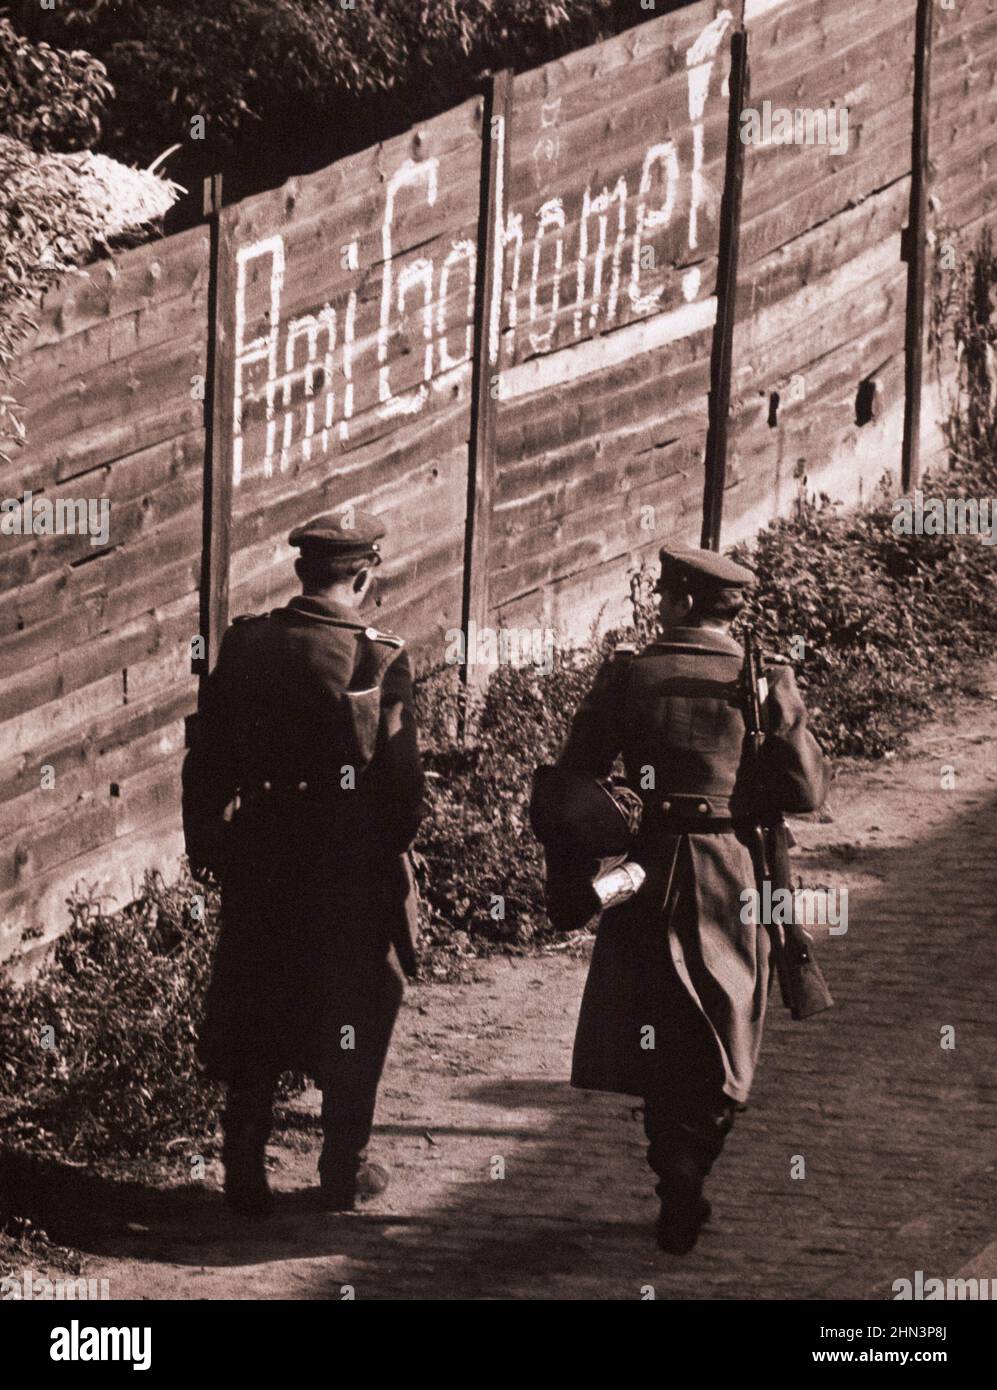 Crise de Berlin de 1961 : construire le mur photo ancienne de la Heidelberstrasse, Neukoelln Berlin. Allemagne de l'est. 19 octobre 1961 Banque D'Images